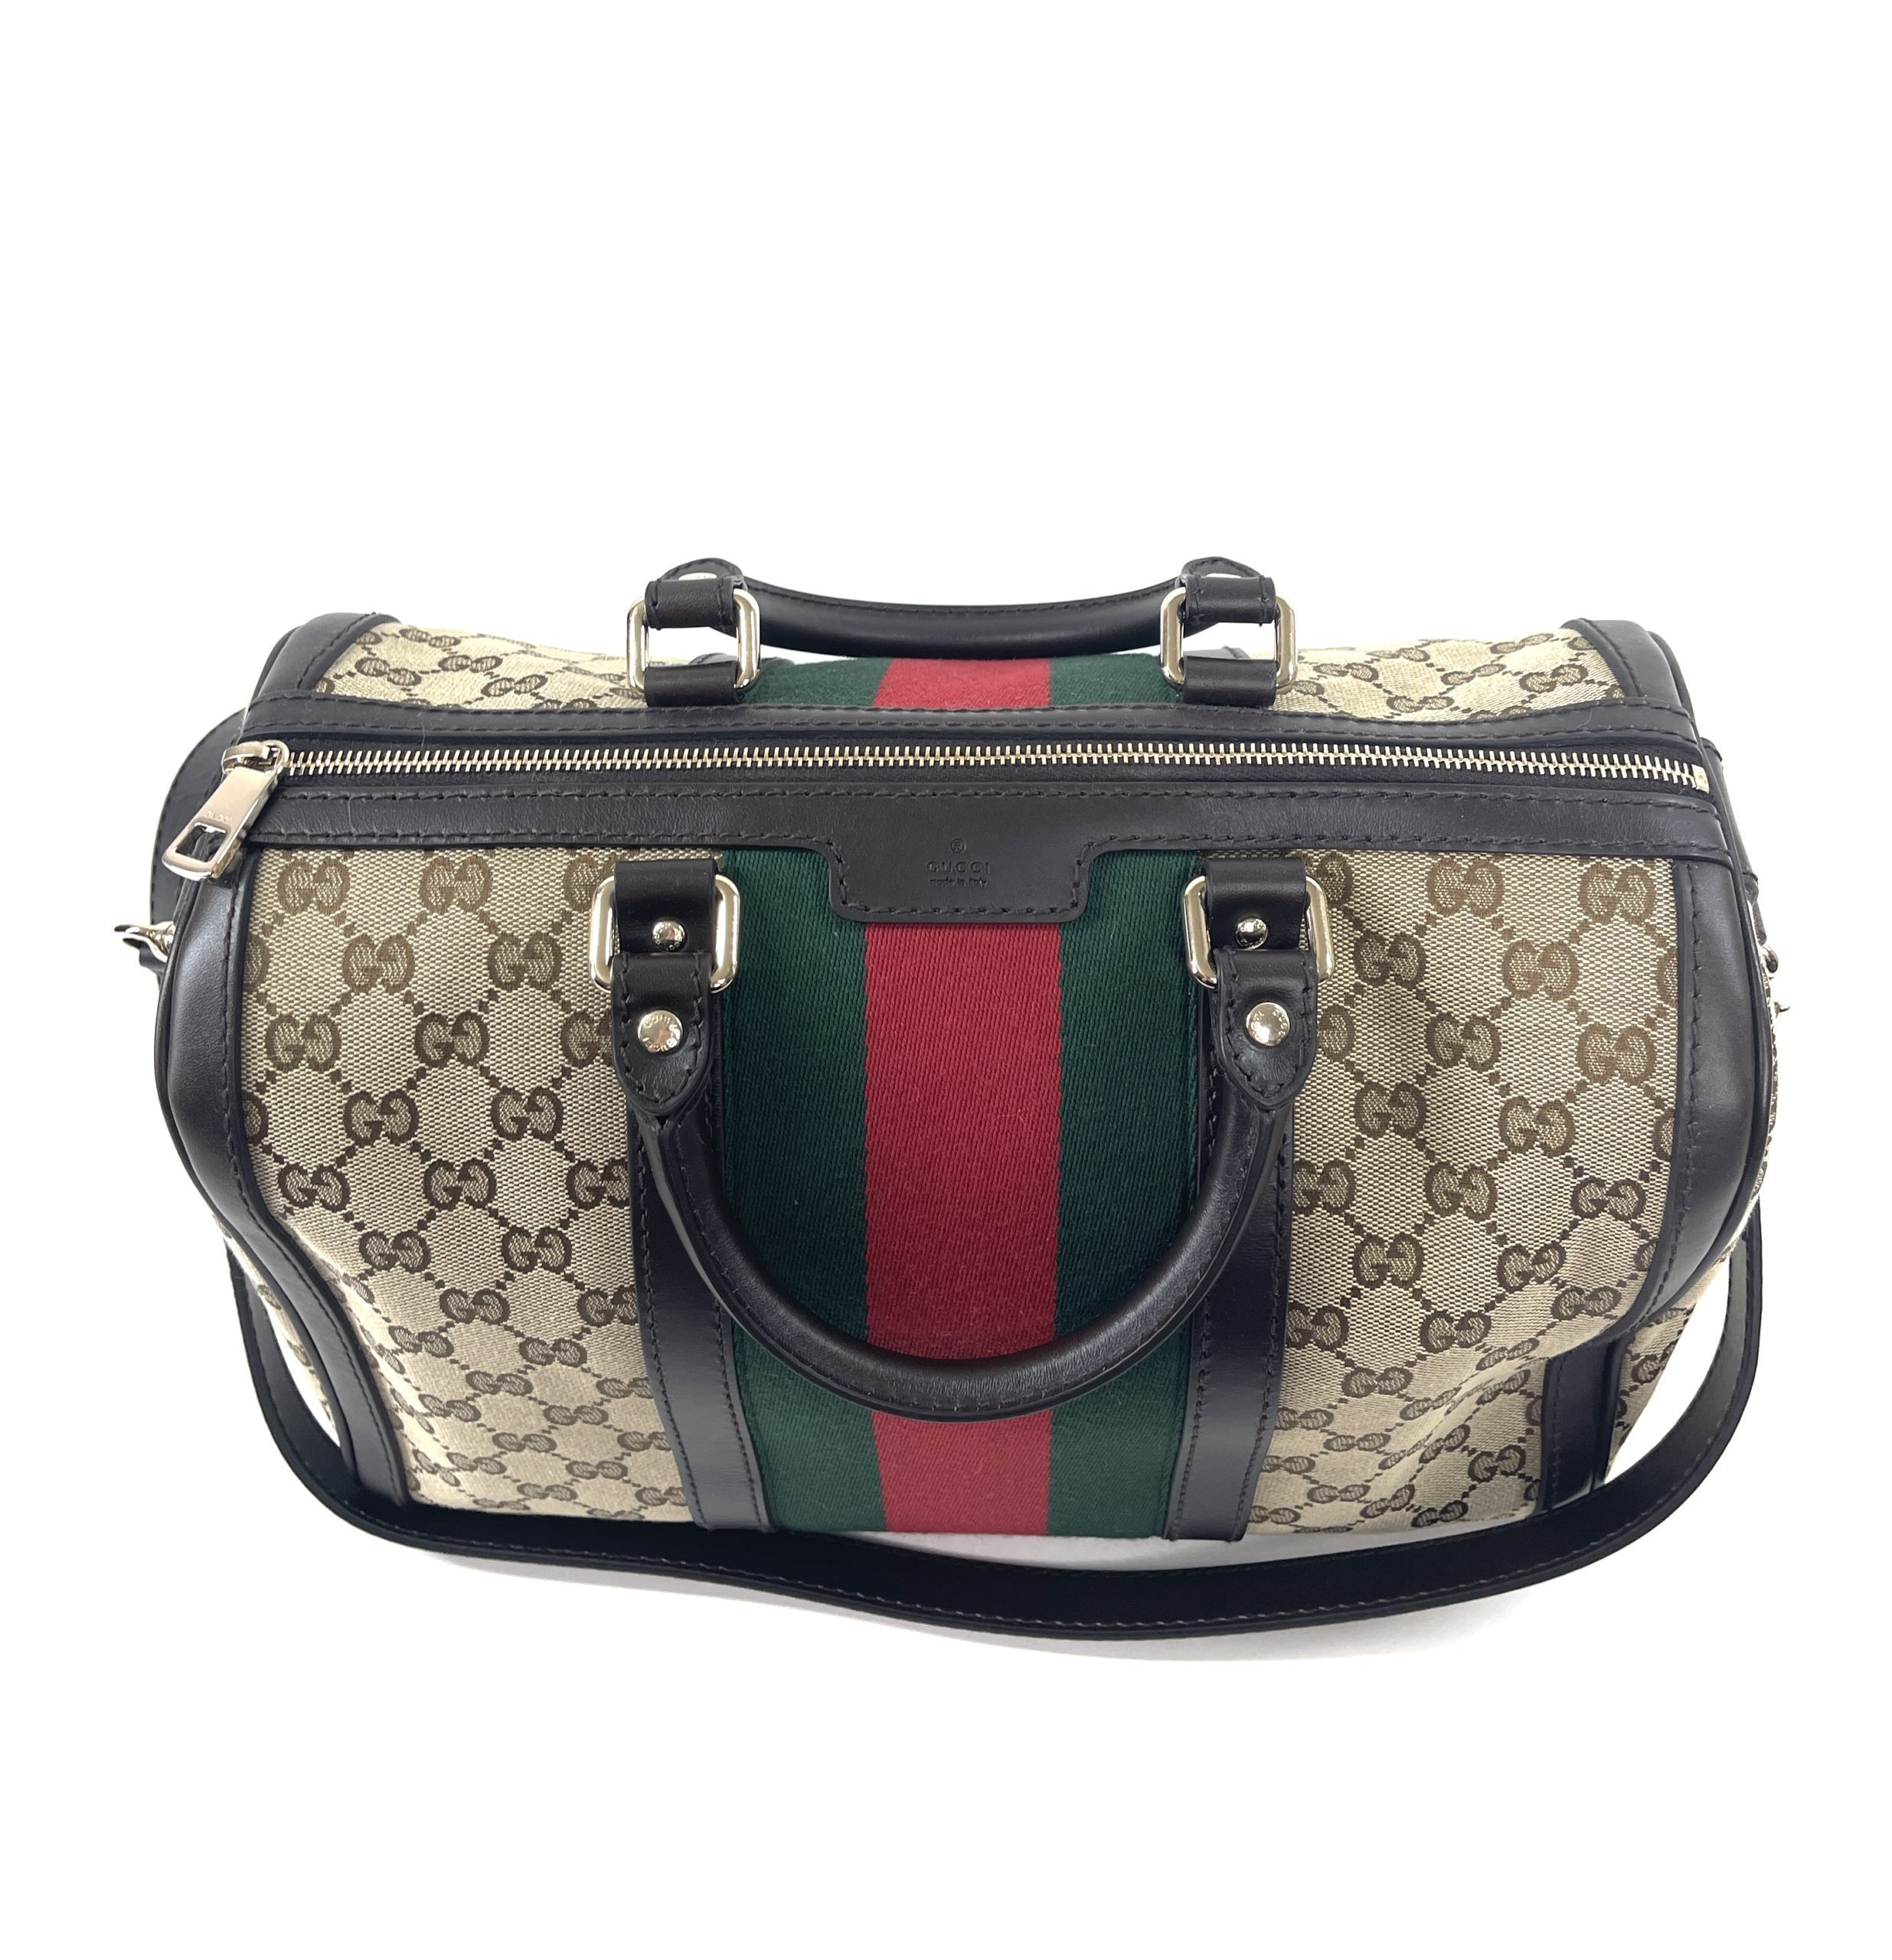 Gucci, Bags, Authentic Gucci Boston Speedy 3 Doctors Bag Purse